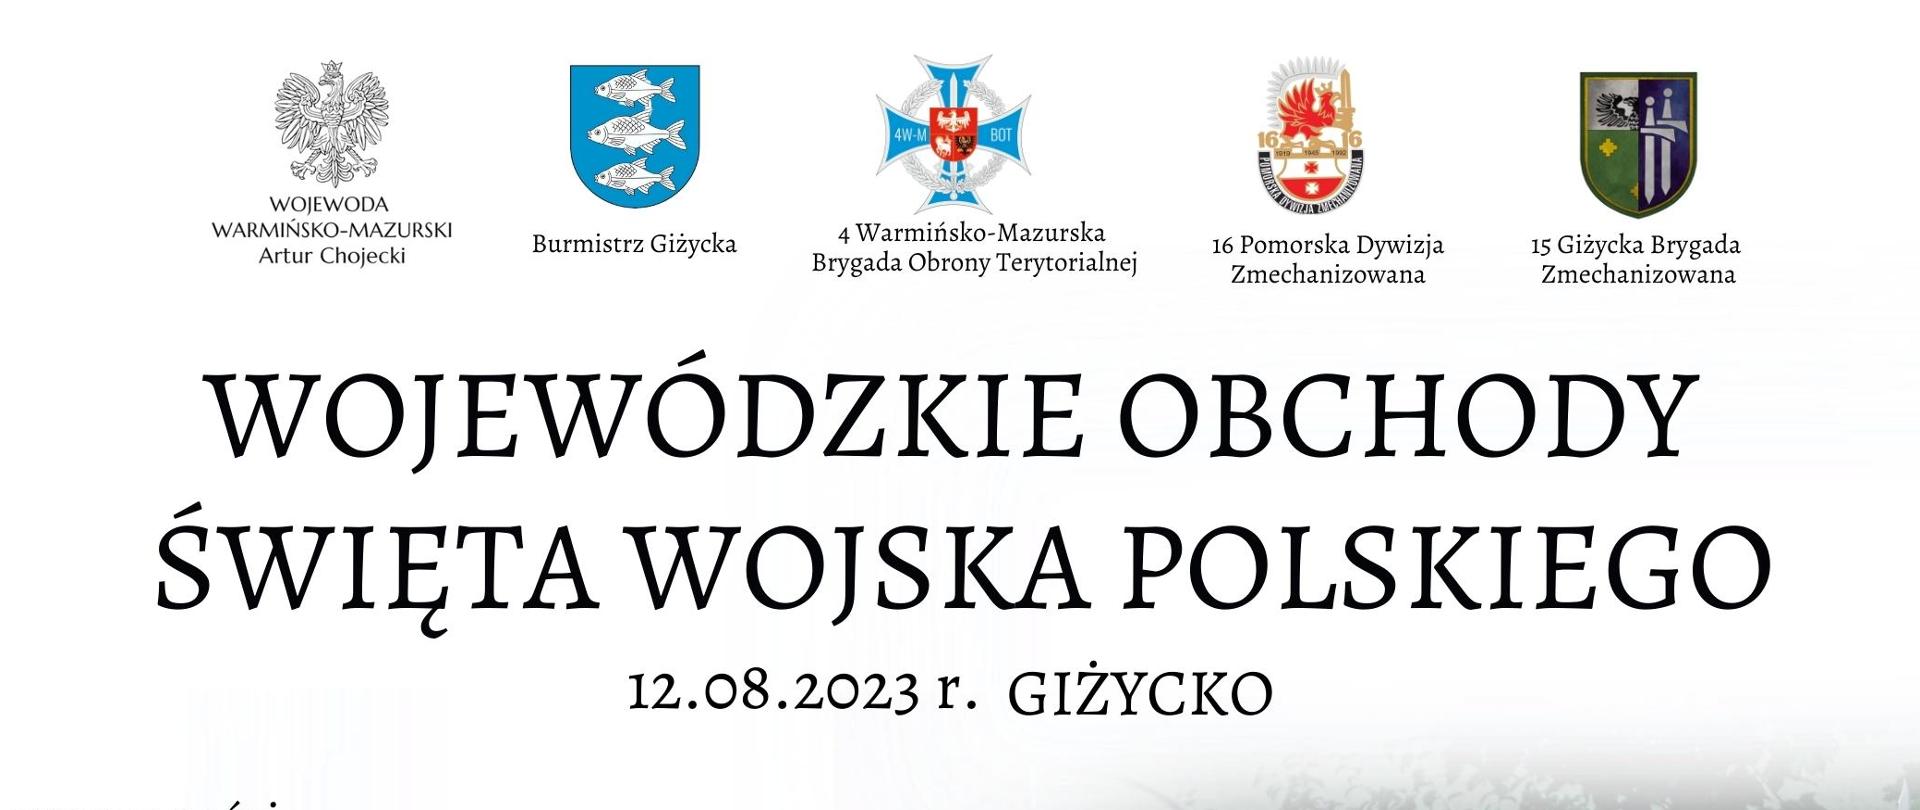 Wojewódzkie Obchody Święta Wojska Polskiego